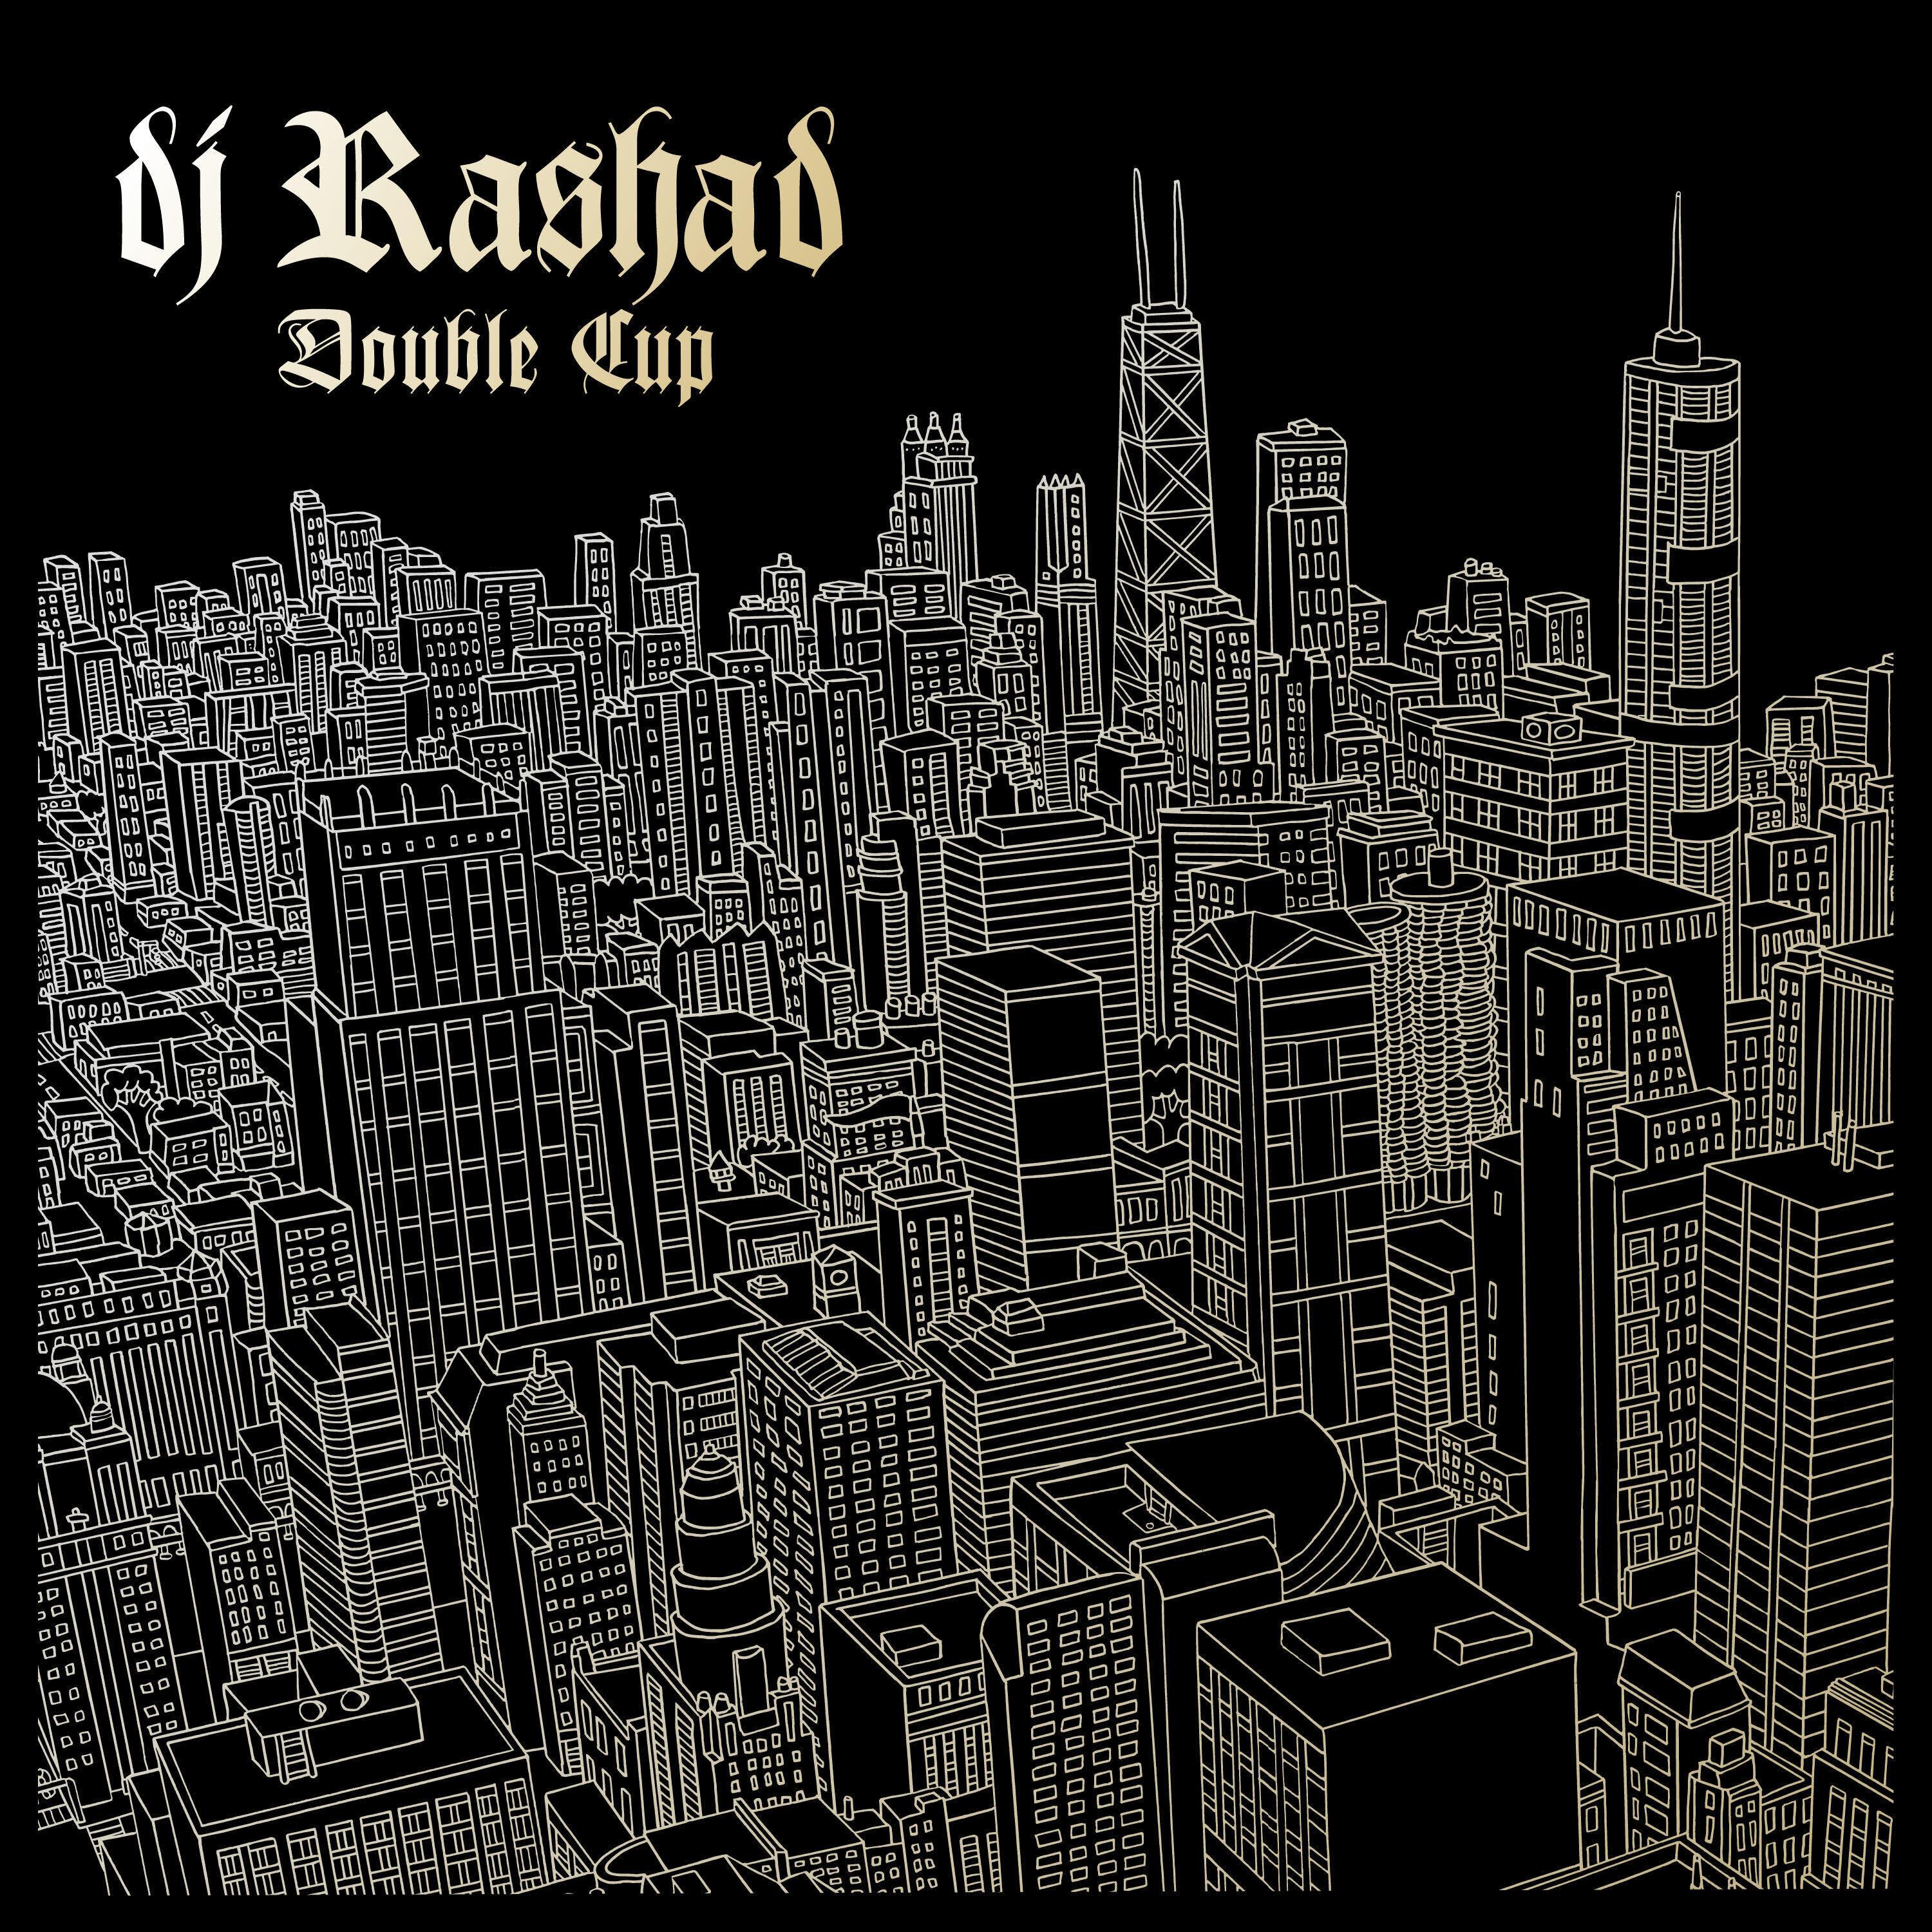 DJ Rashad - Pass That Shit (feat. DJ Spinn & Taso)